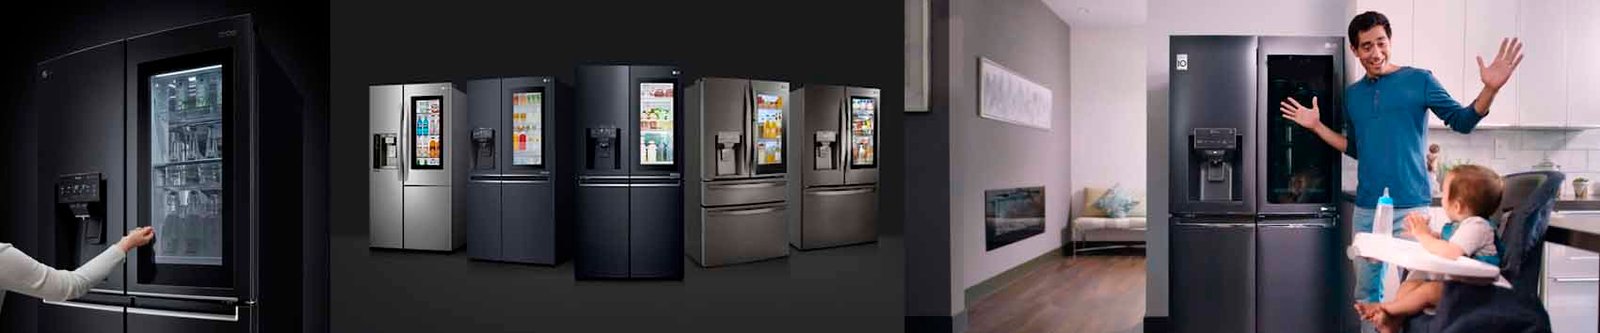 Assistencia técnica LG refrigeradores Morumbi